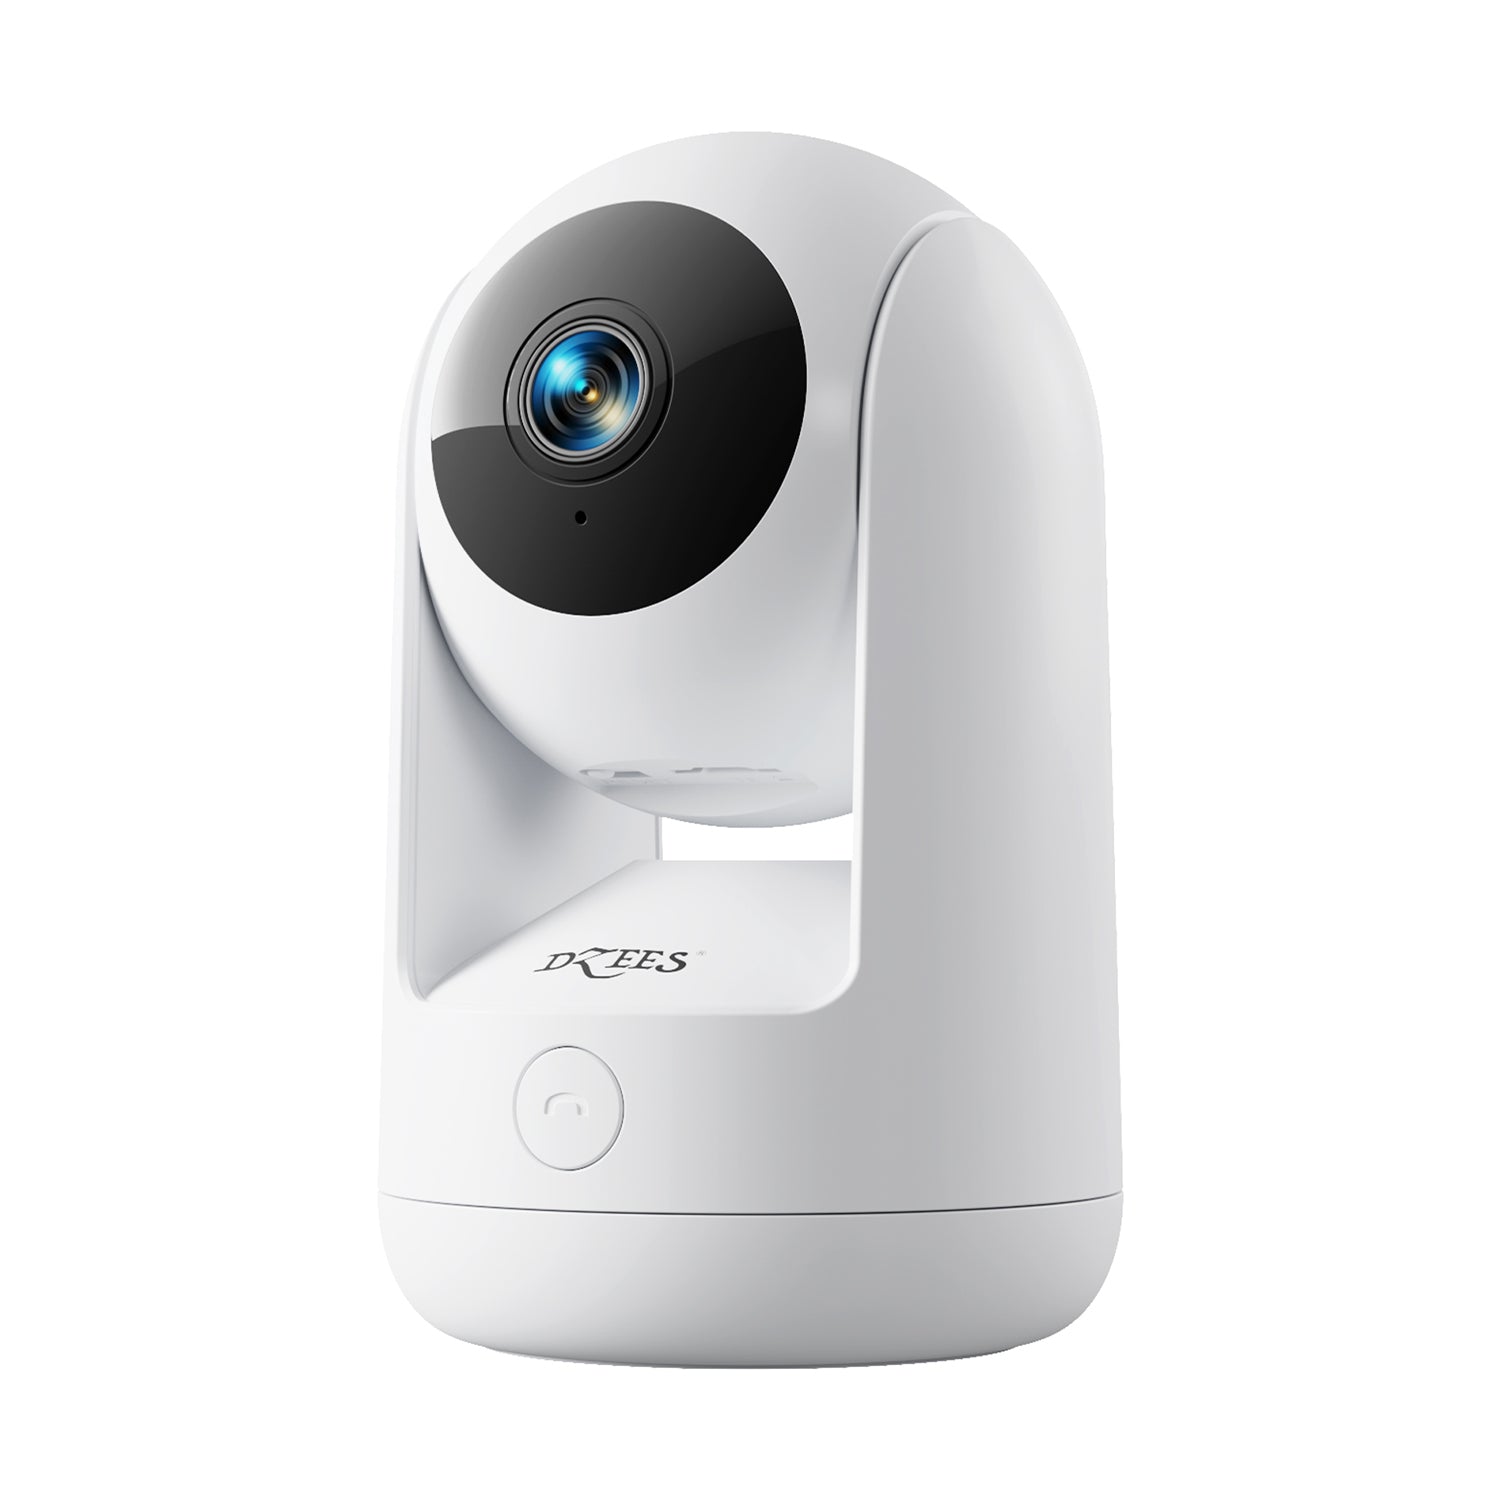 Dzees wireless indoor pet security camera 